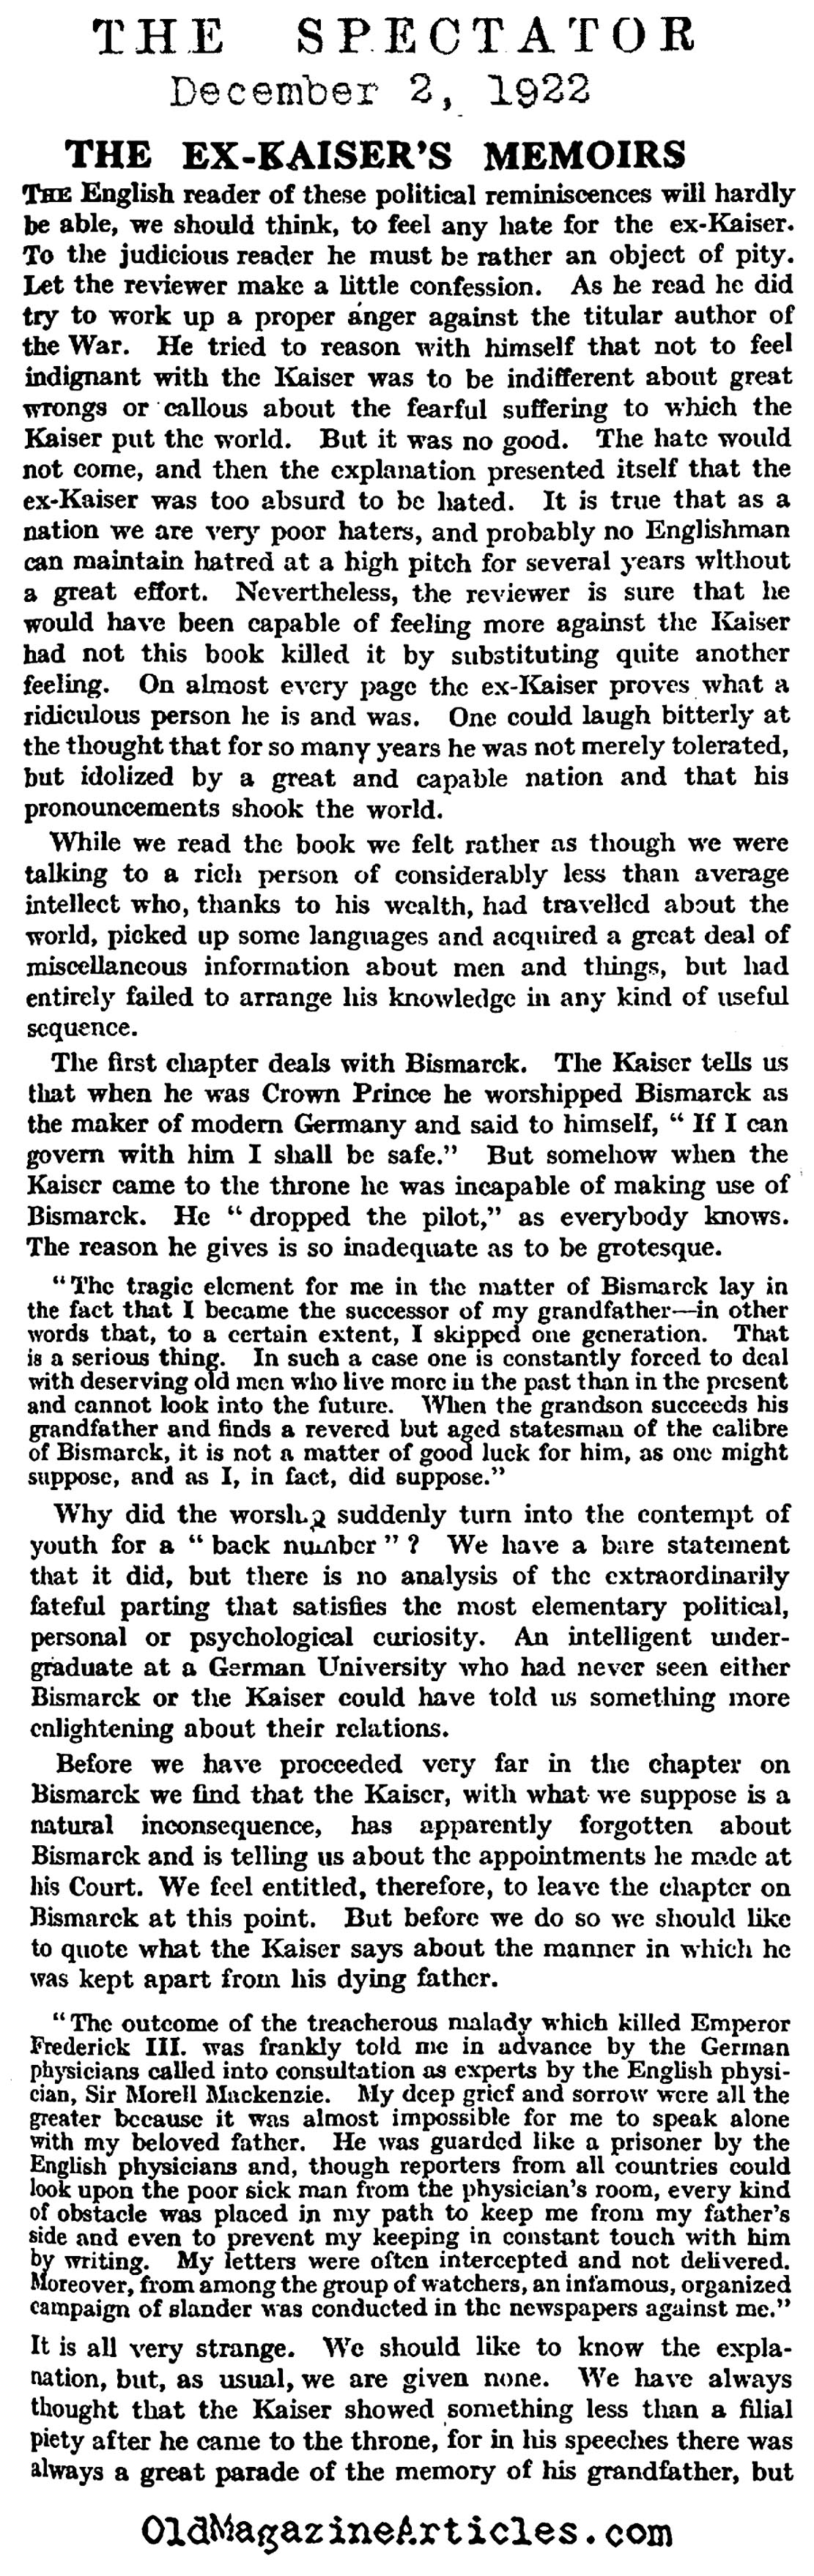  Review of Kaiser Welhelm's Memoir (The Spectator, 1922)